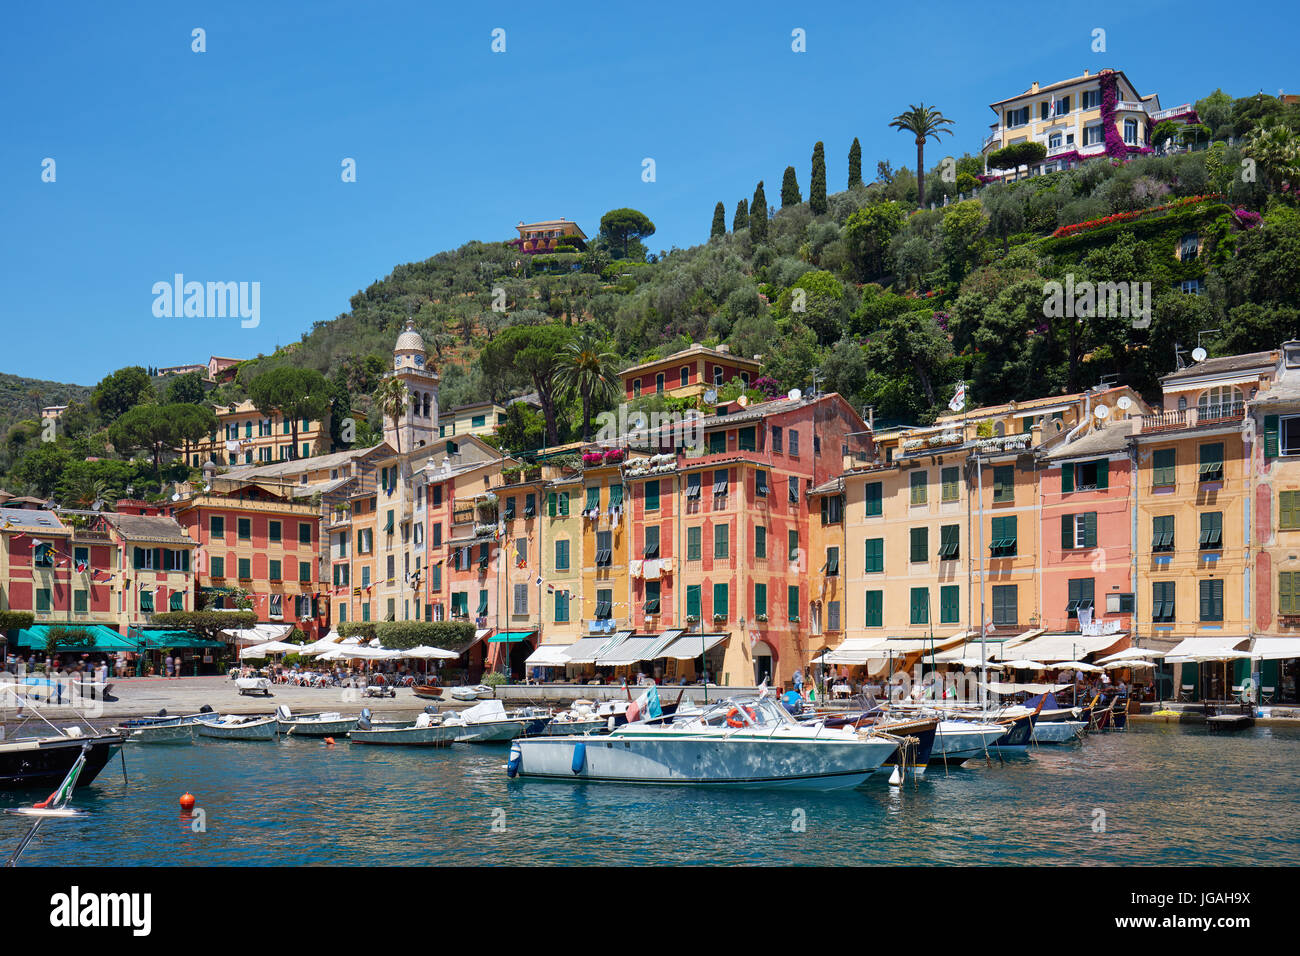 Beau village typique de Portofino avec ses maisons colorées et son petit port en Italie, sur la côte de la mer de Ligurie, province de Gênes Banque D'Images